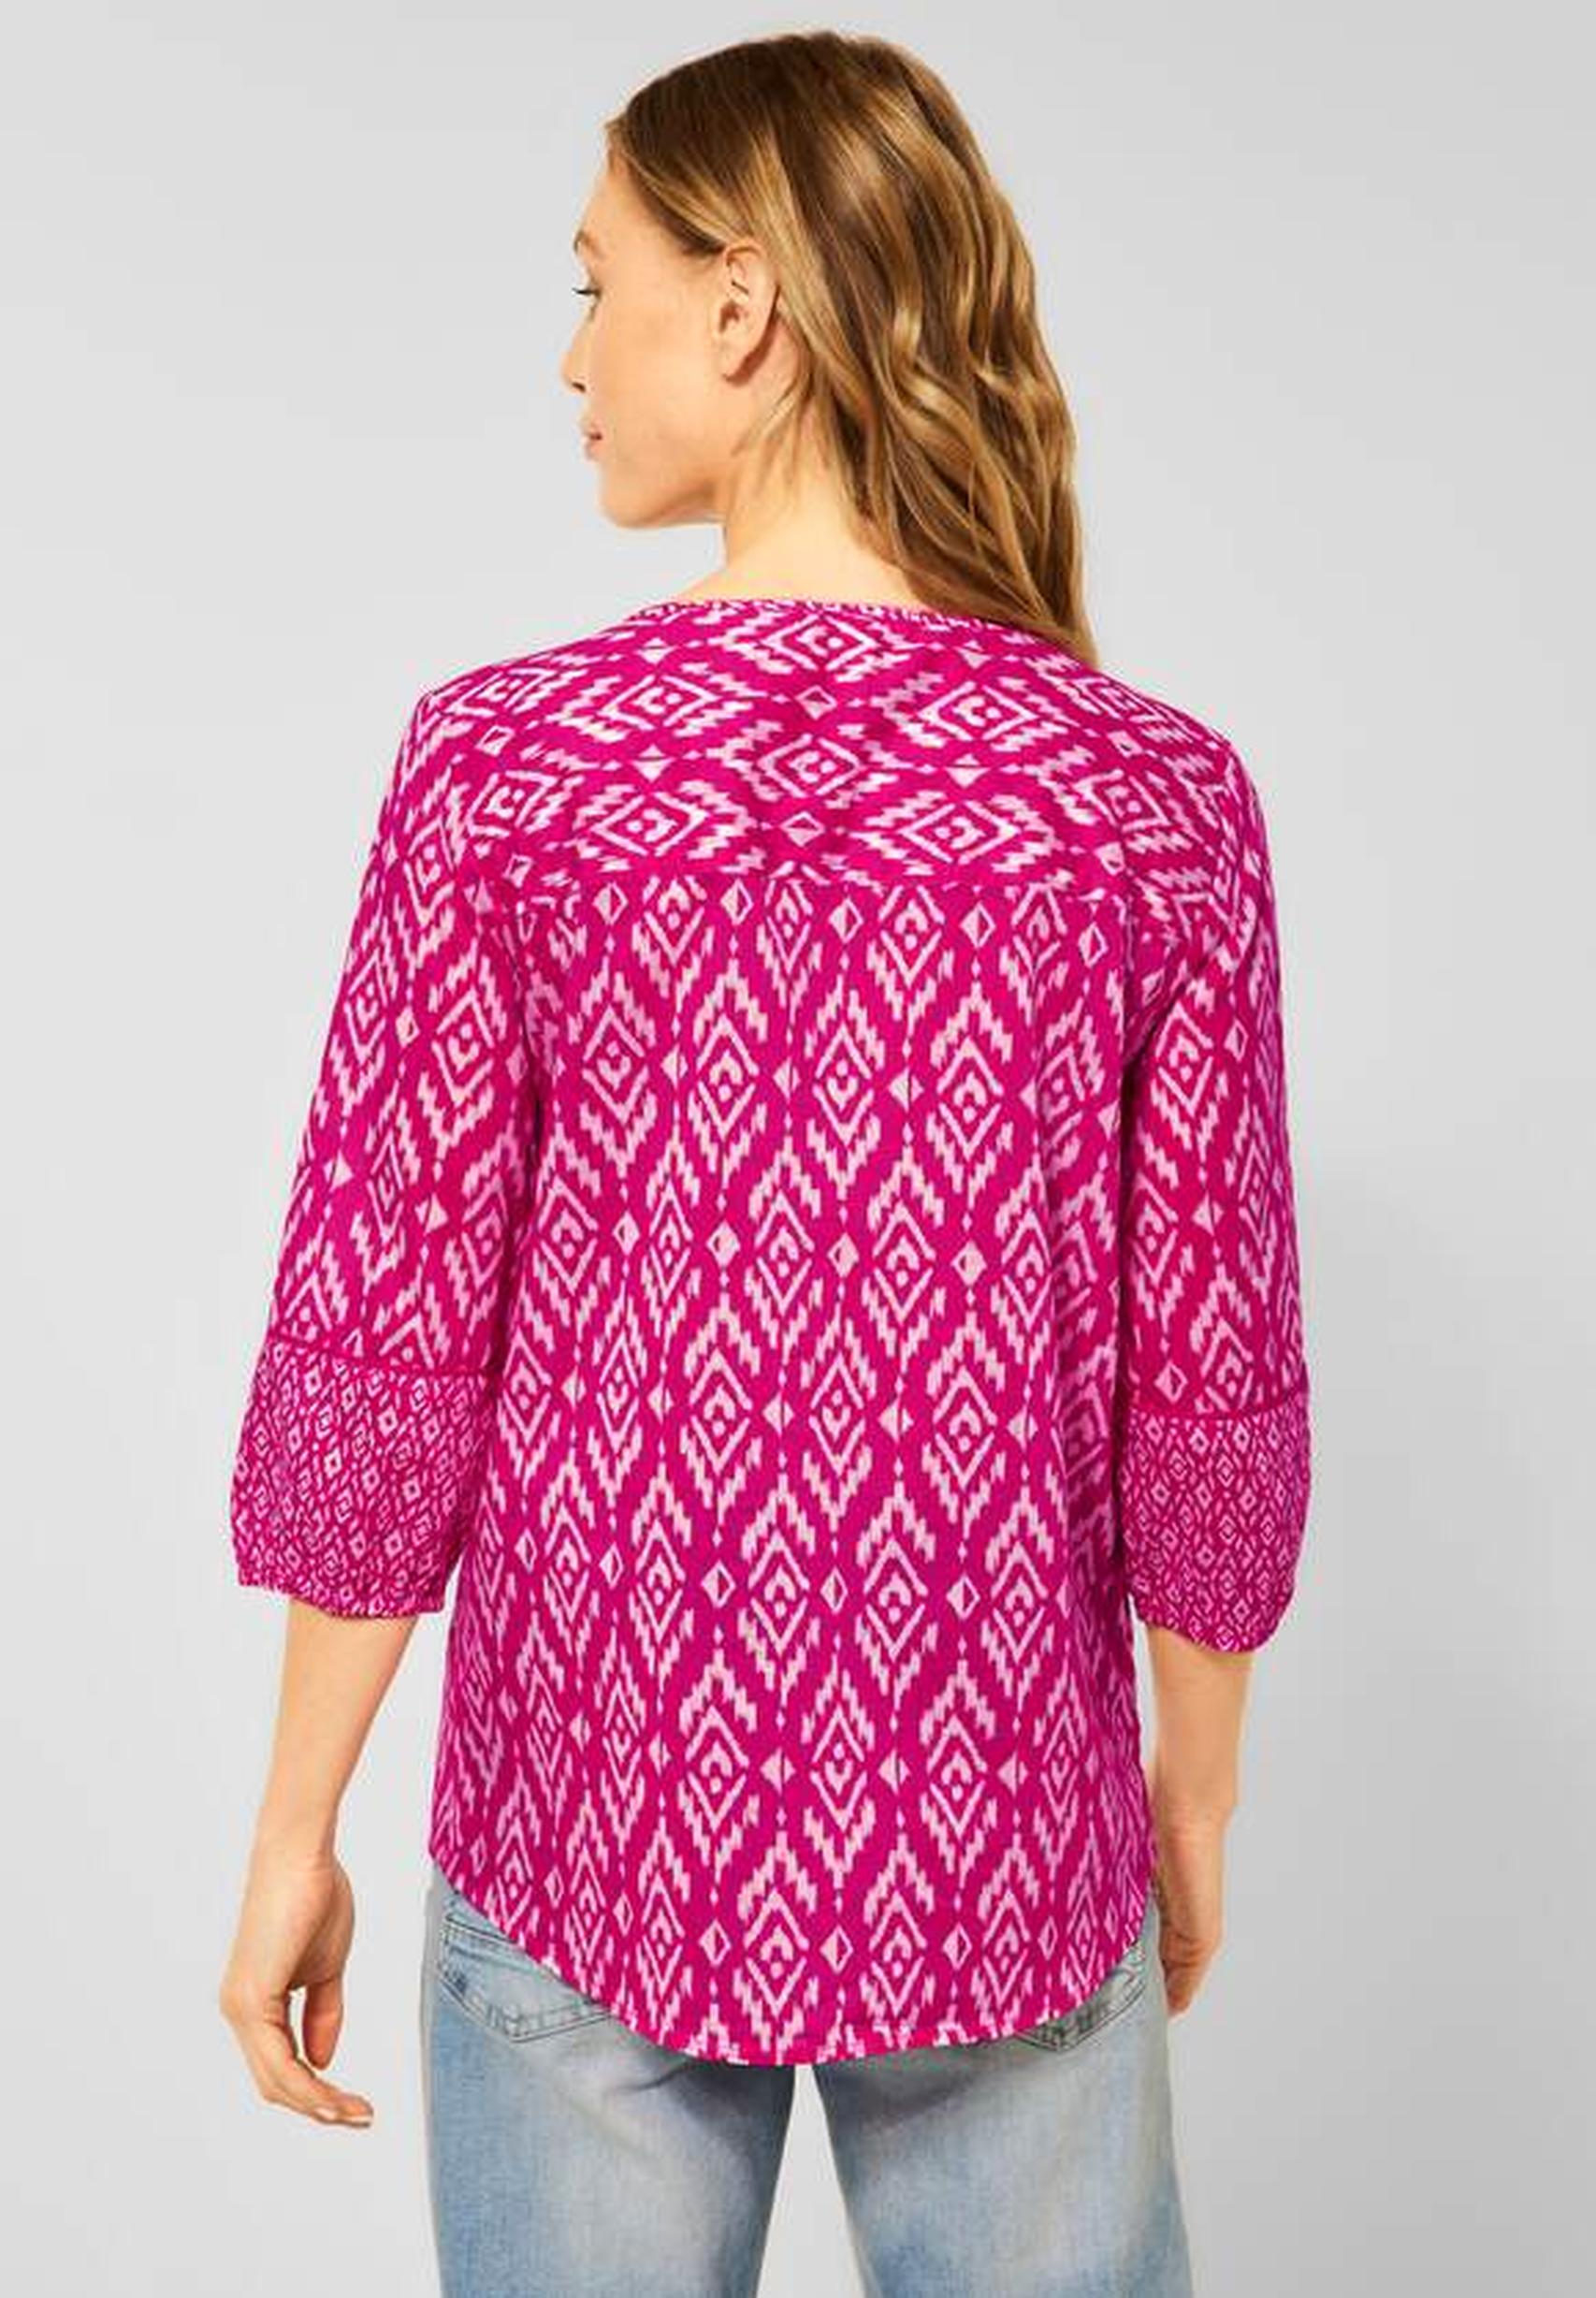 Modische Bluse aus der Kollektion 343270 CECIL Raspberry Pink in von